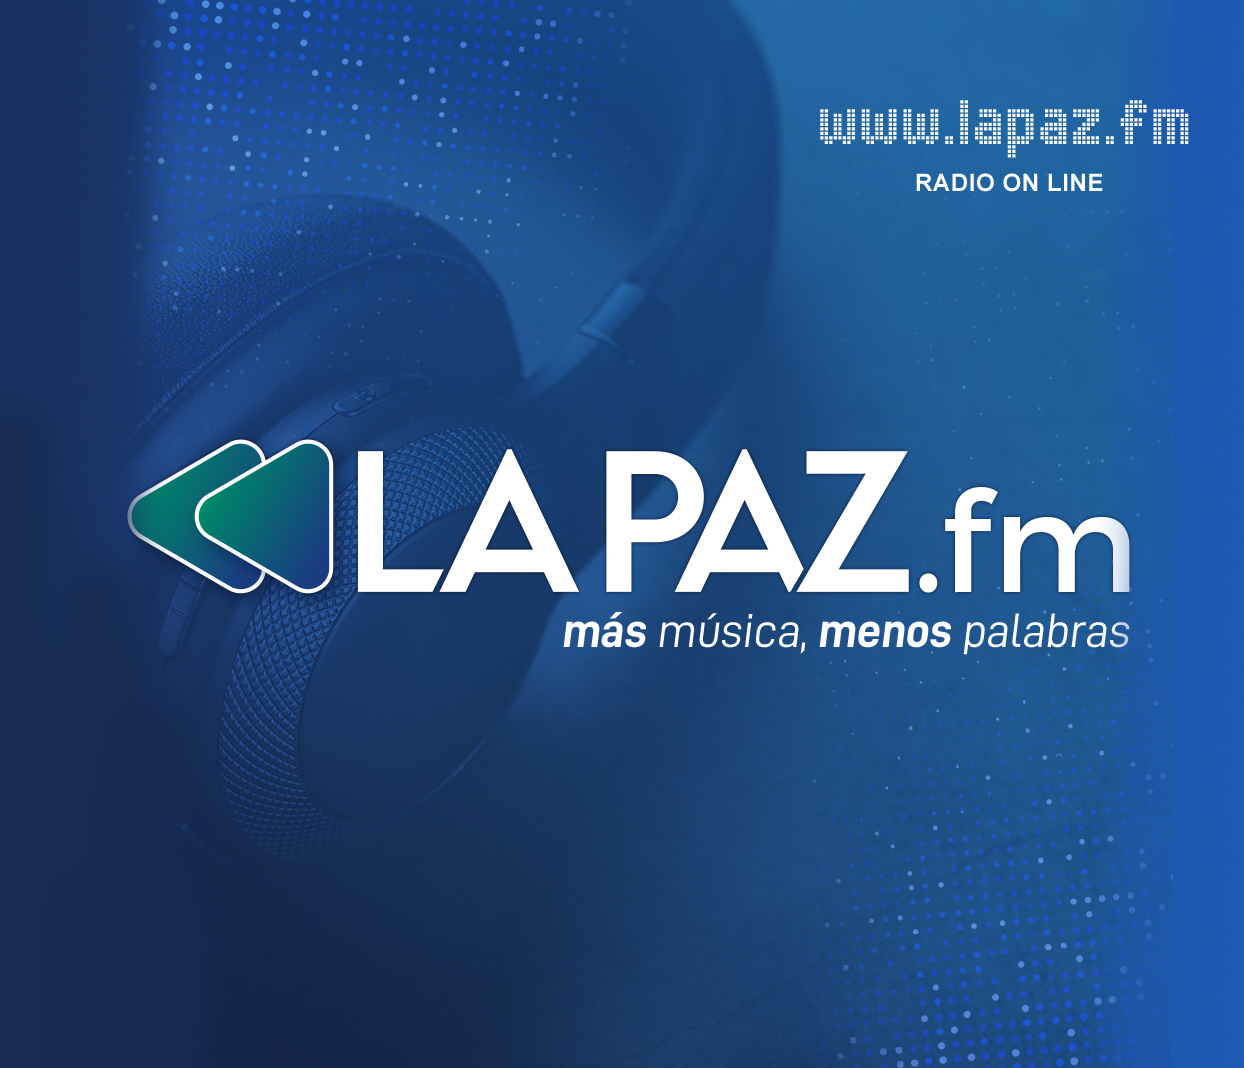 www.lapaz.fm